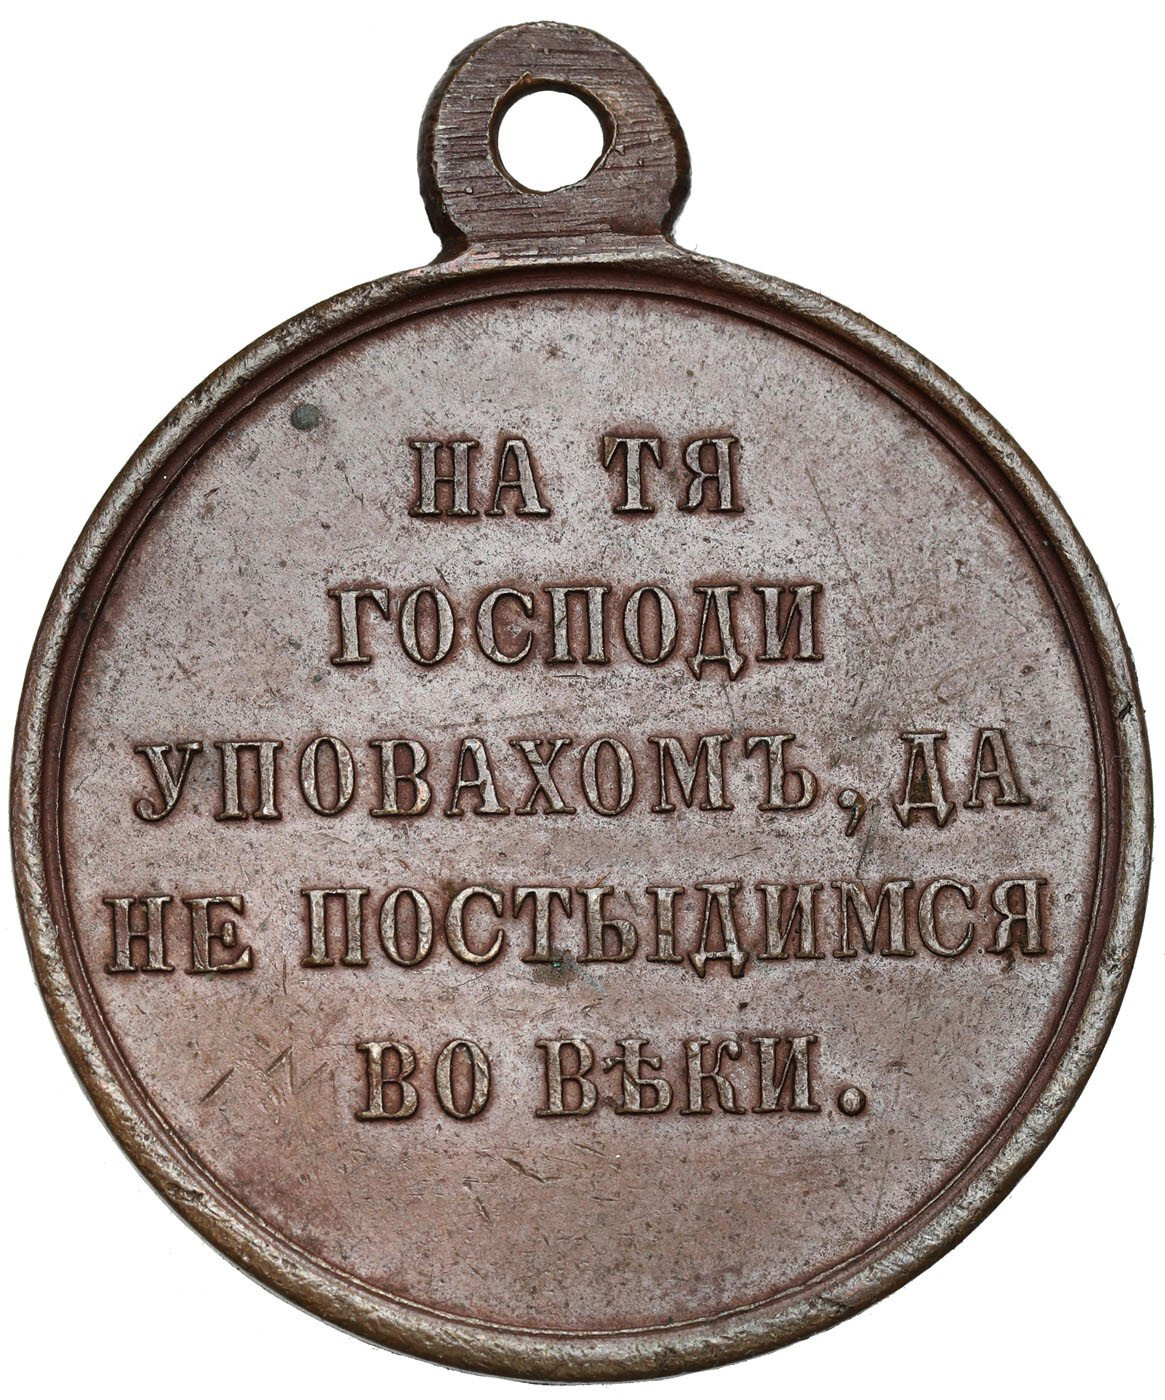 Rosja. Aleksander II. Medal za wojnę krymską 1853-1856, brąz – PIĘKNY